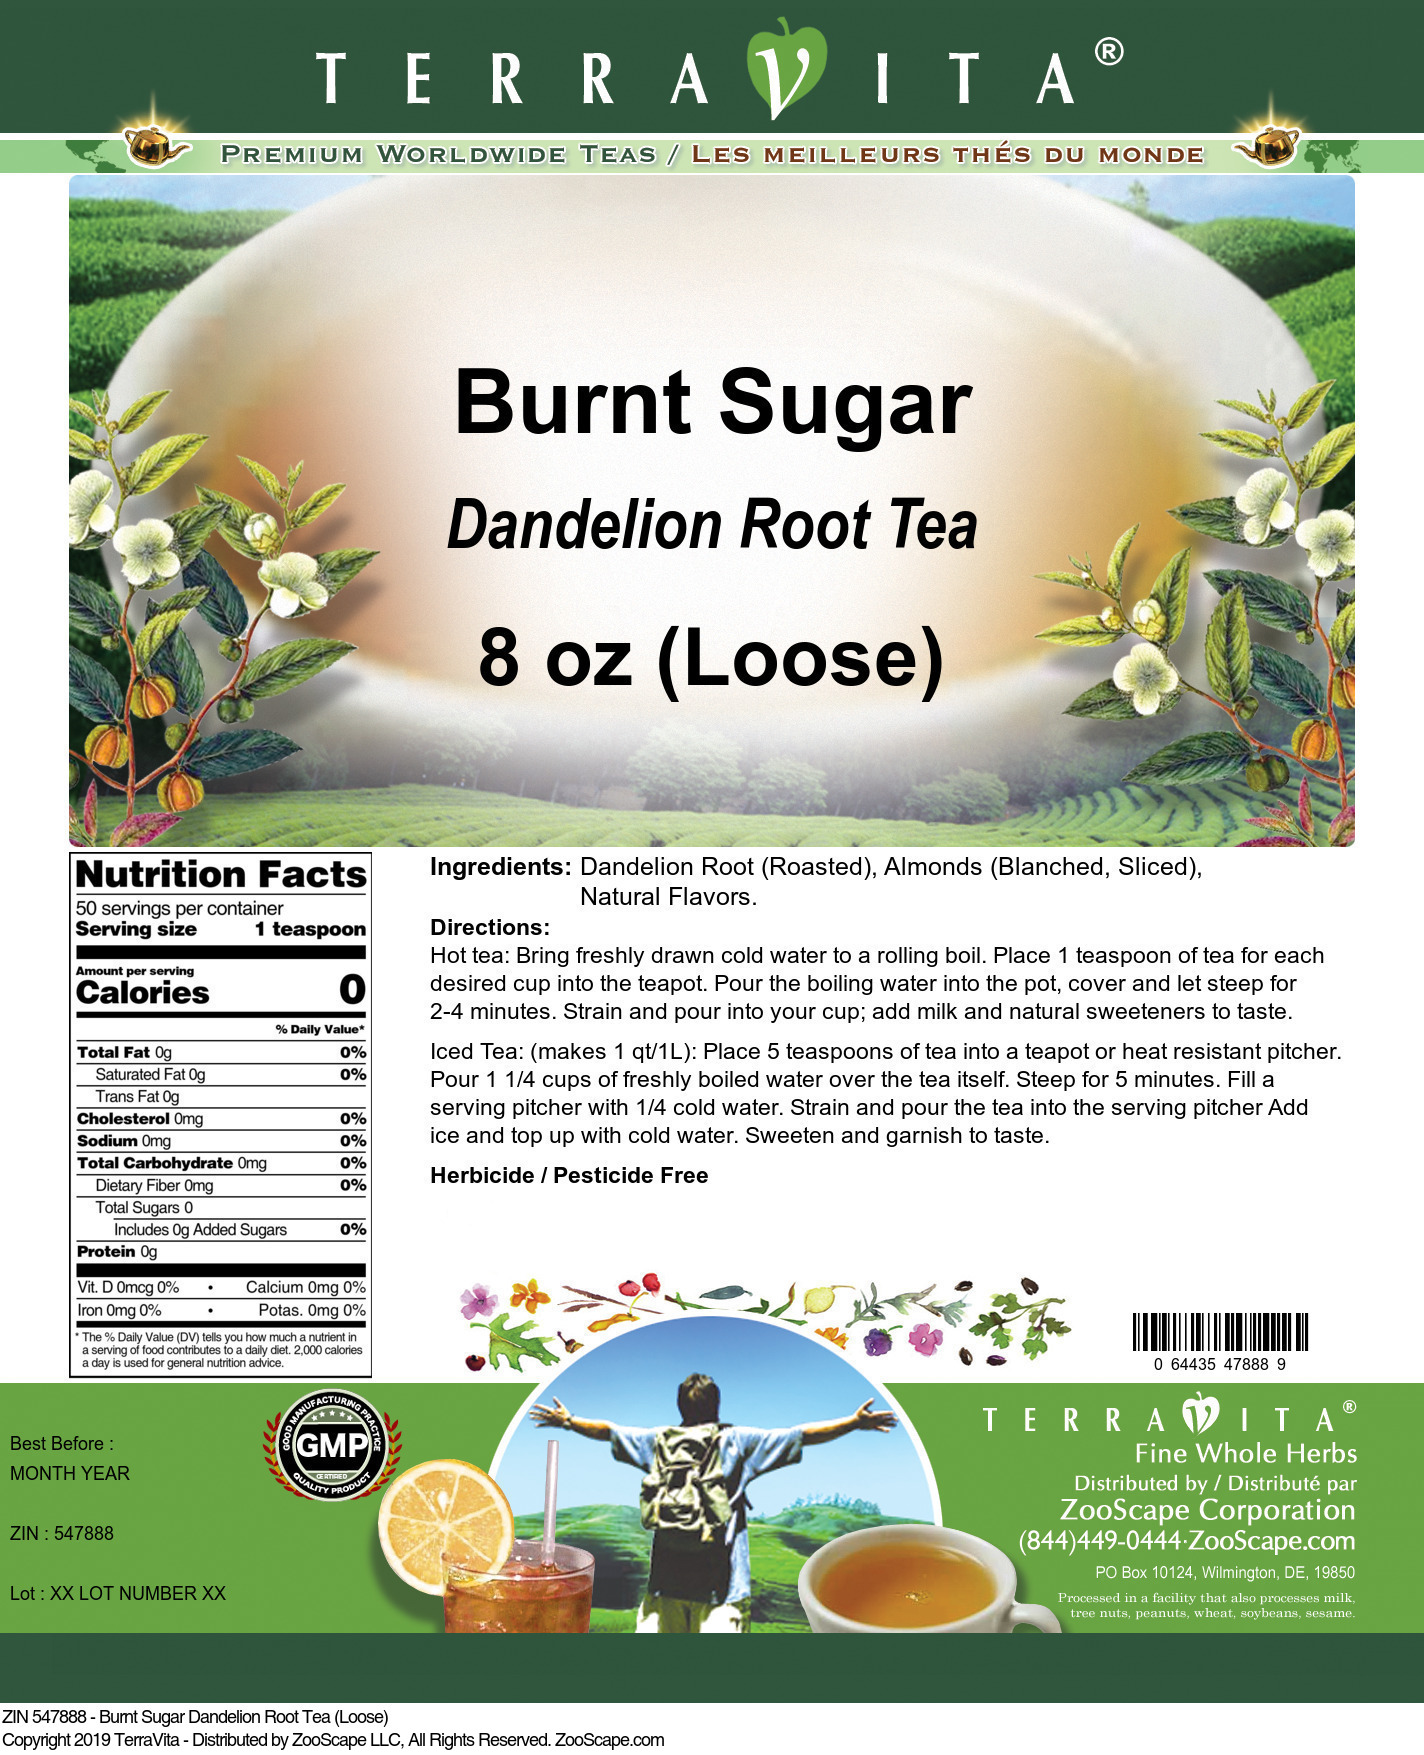 Burnt Sugar Dandelion Root Tea (Loose) - Label